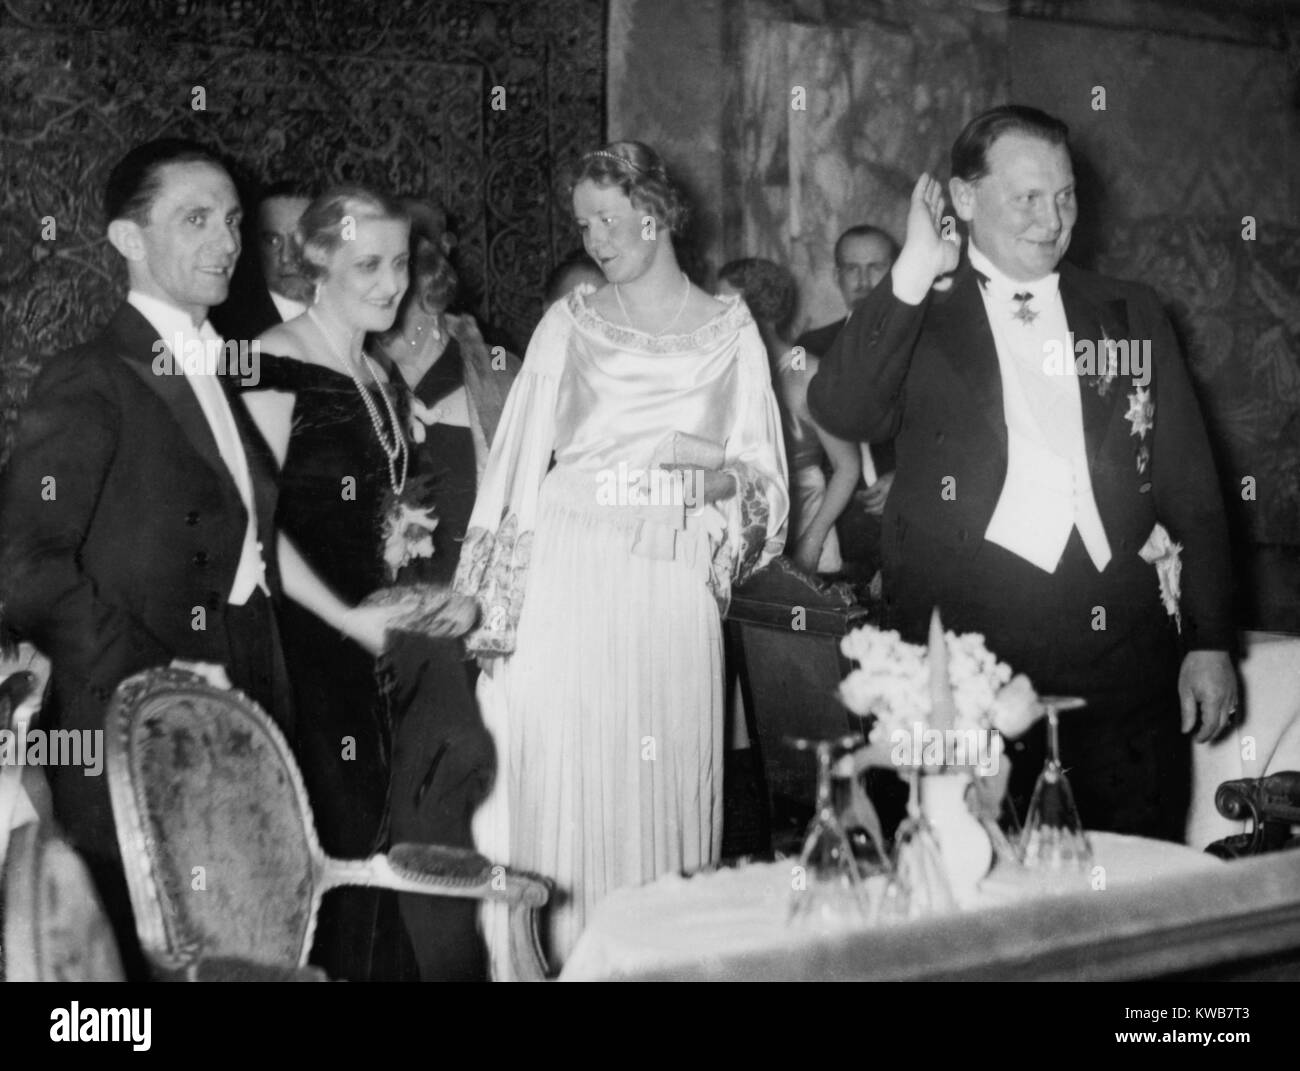 Giuseppe e Magda Goebbels con Emmy e Hermann Goering a premere la sfera. Come mogli del secondo e terzo più Importanti Nazisti tedeschi", spesso apparsi a funzioni ufficiali. Berlino, Germania, 1939. (BSLOC 2014 8 175) Foto Stock